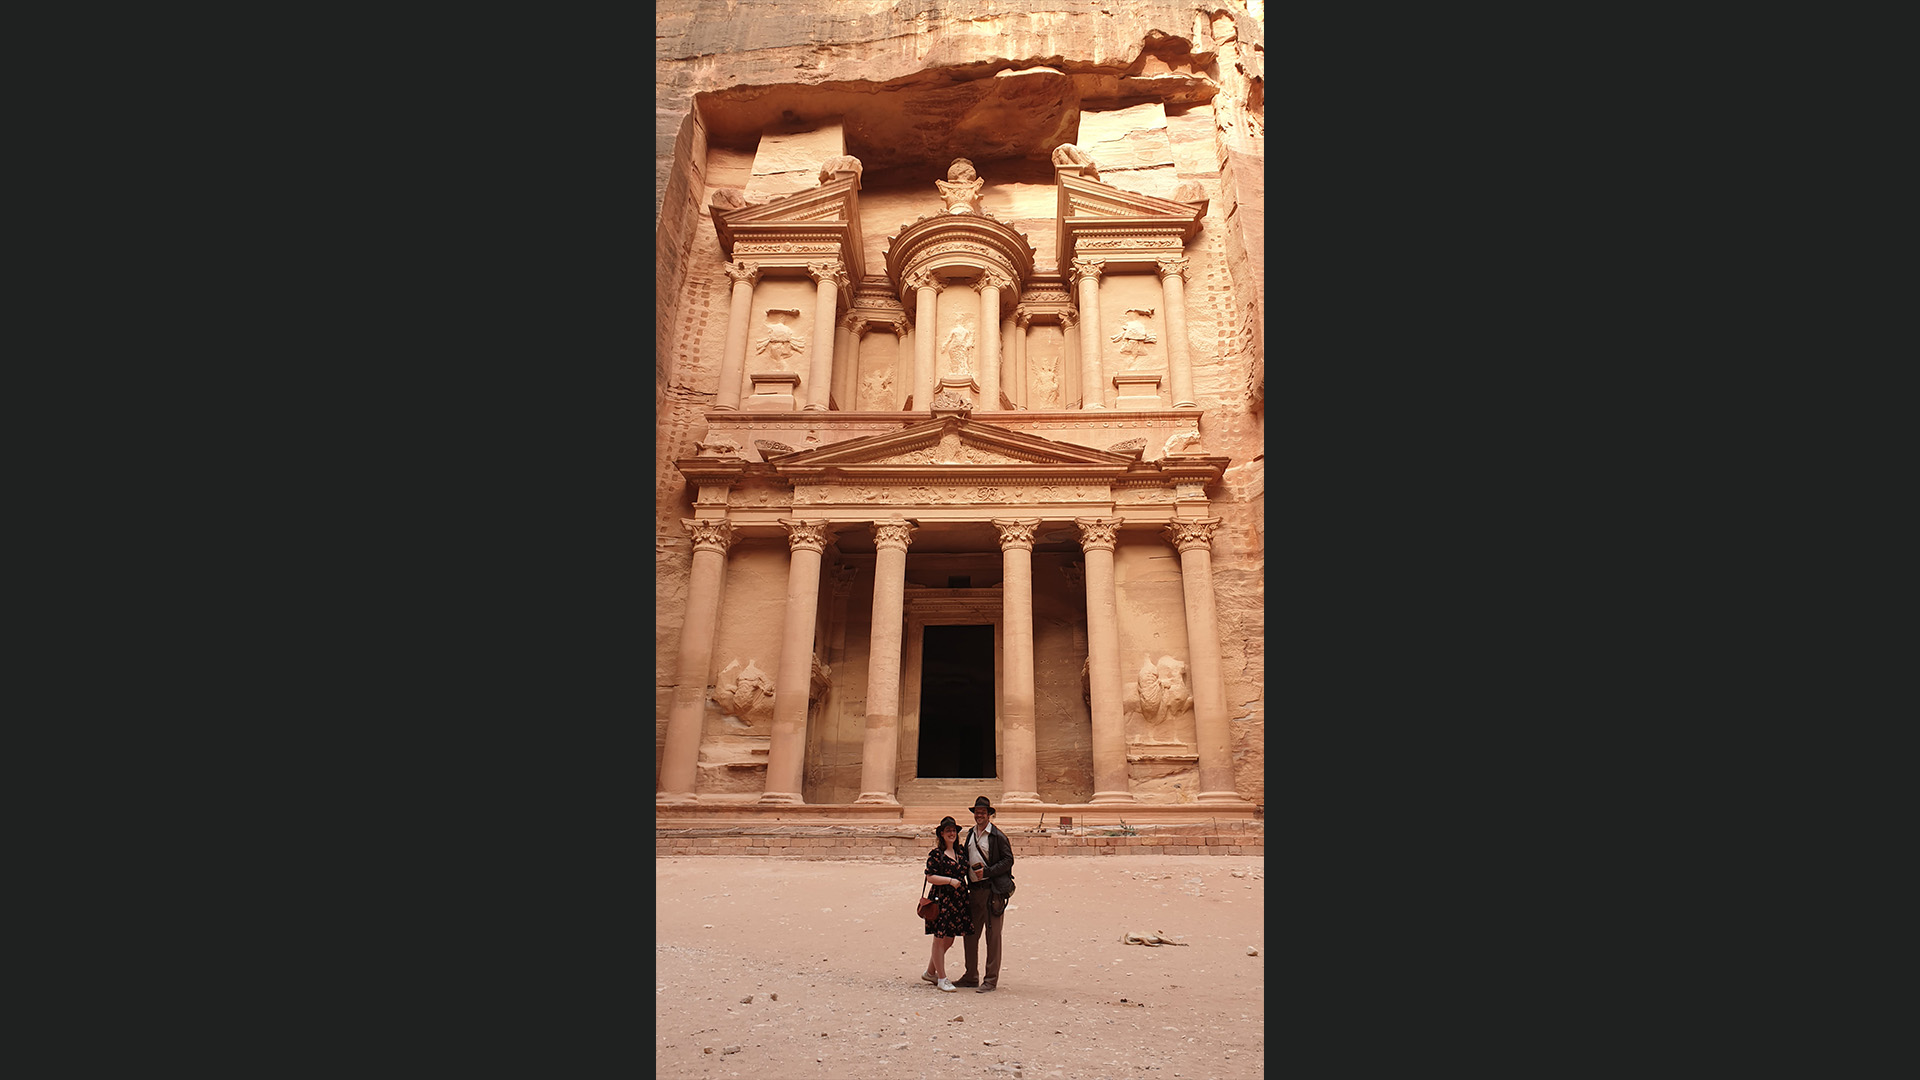 Laura and Joost visit Petra in Jordan.